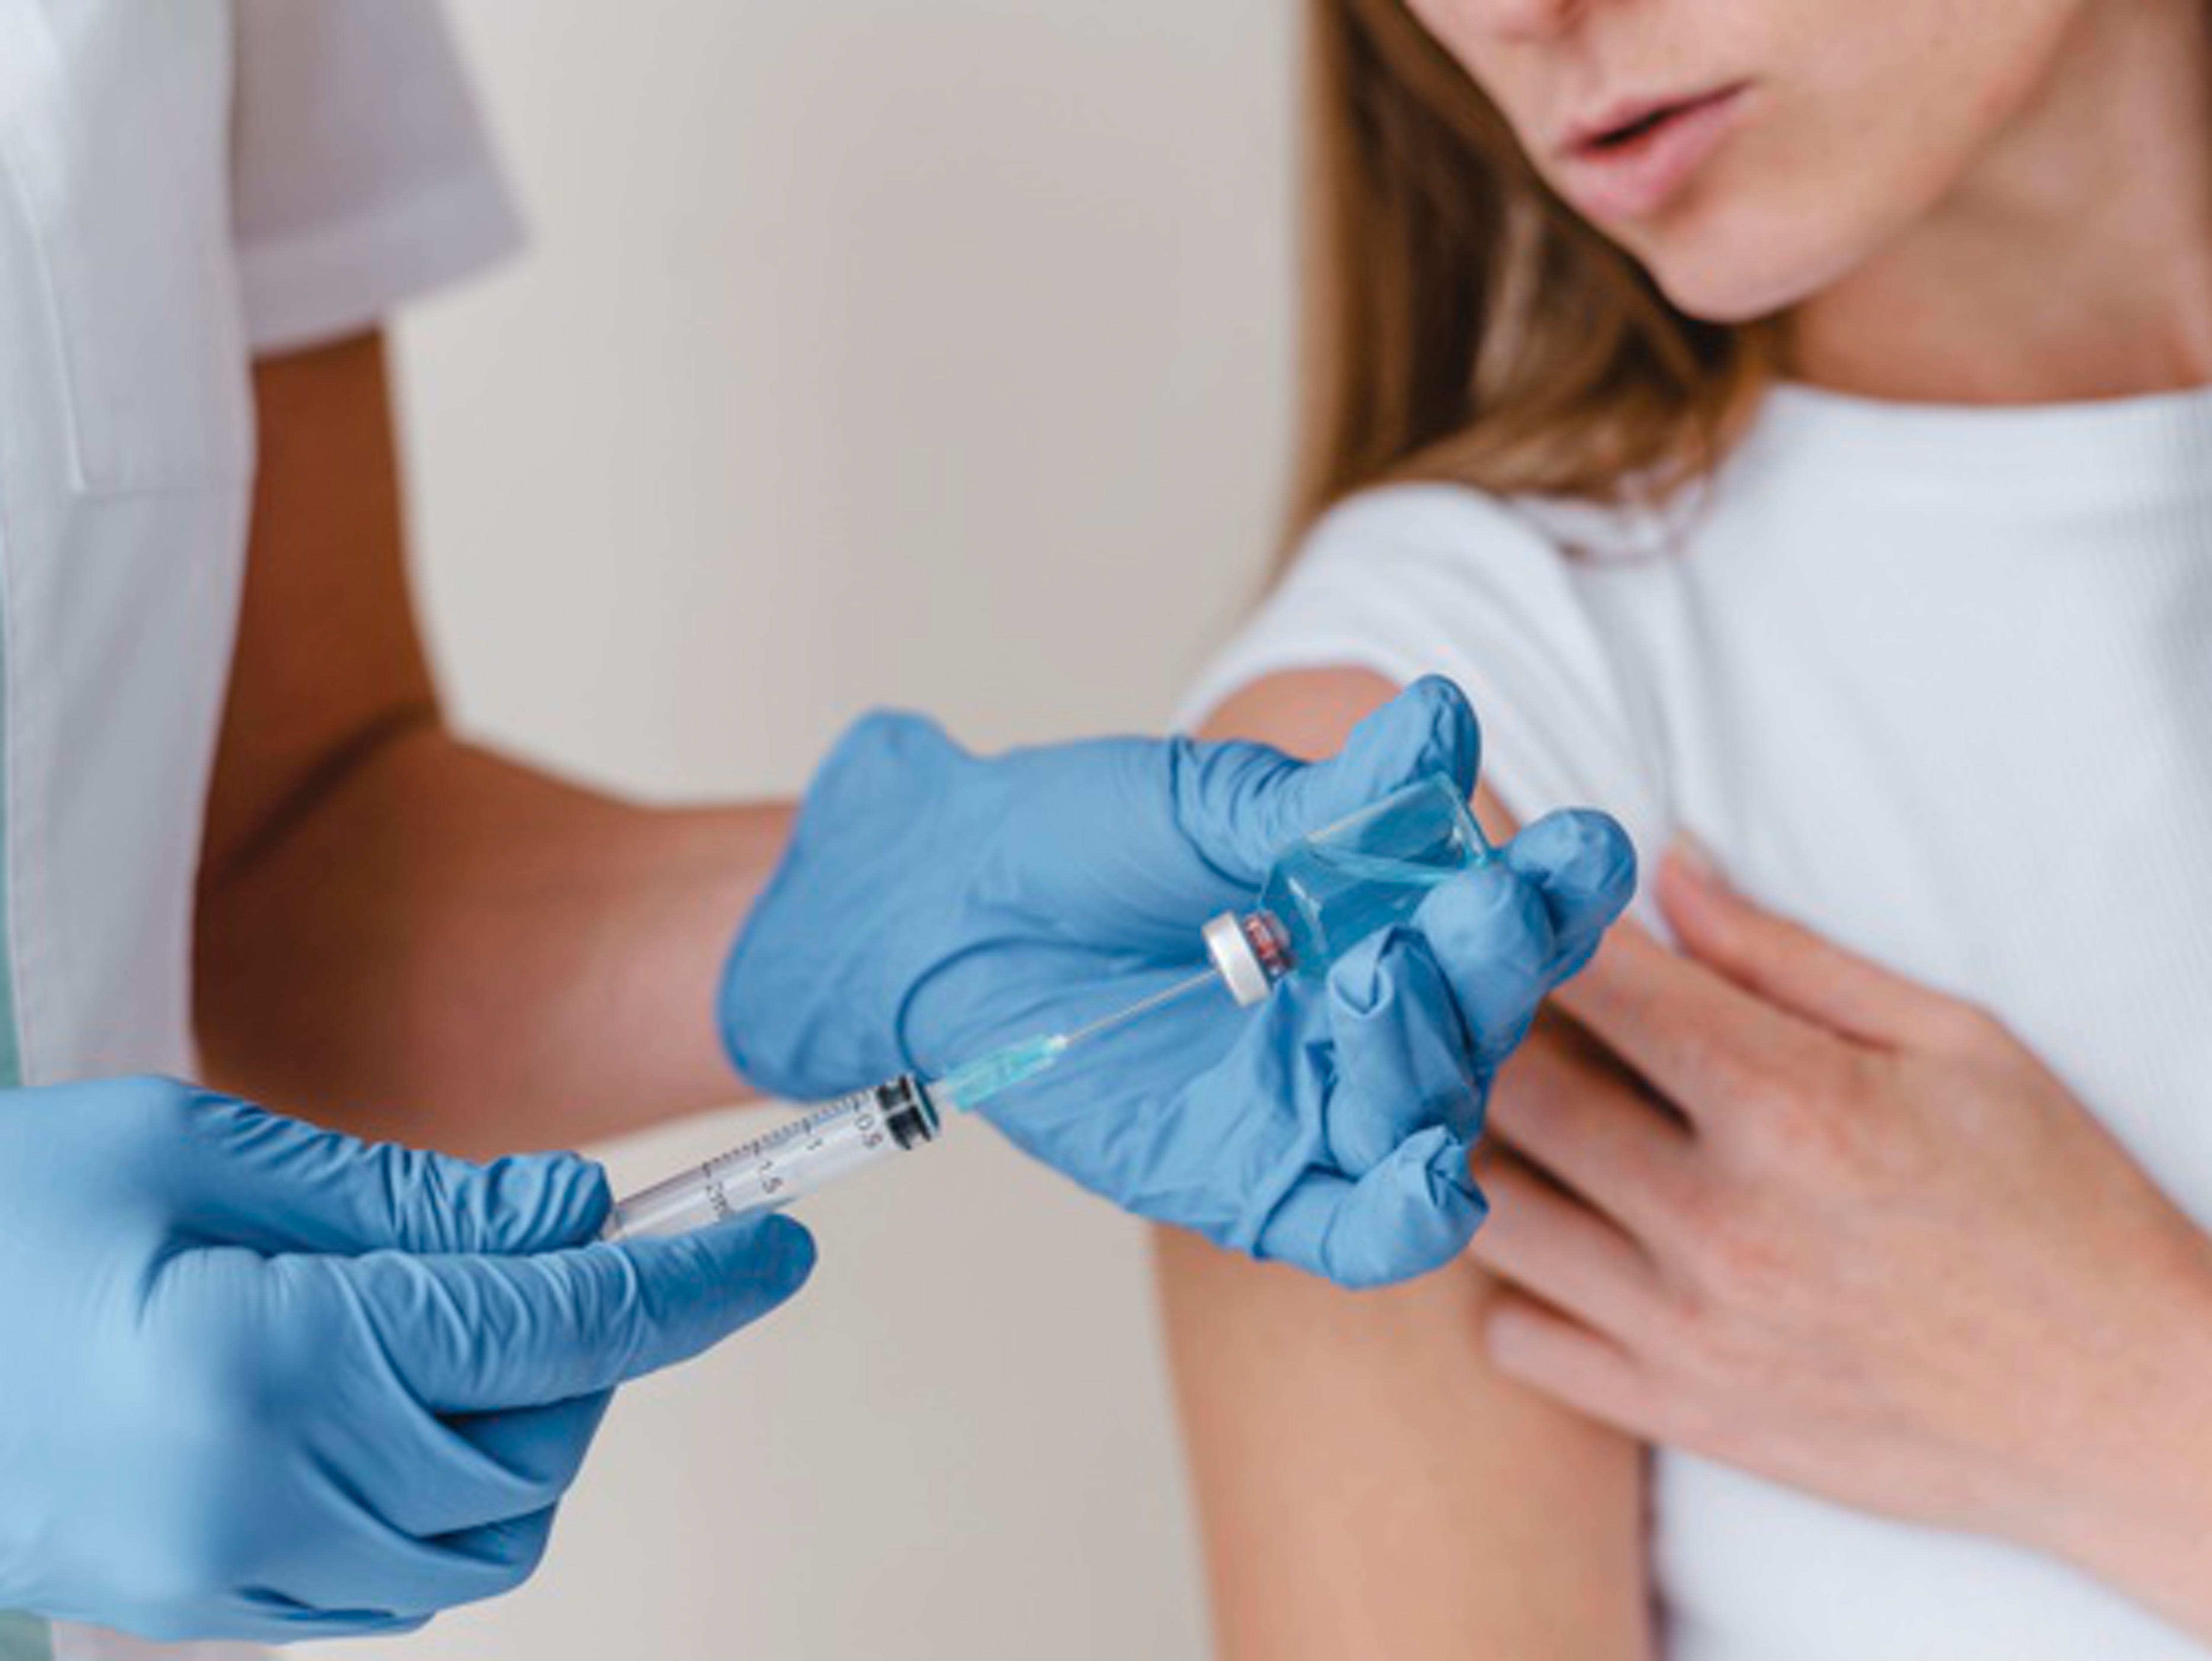 Οι γυναίκες αναφέρουν χειρότερες παρενέργειες από το εμβόλιο COVID-19 – Γιατί συμβαίνει αυτό, σύμφωνα με τους ειδικούς